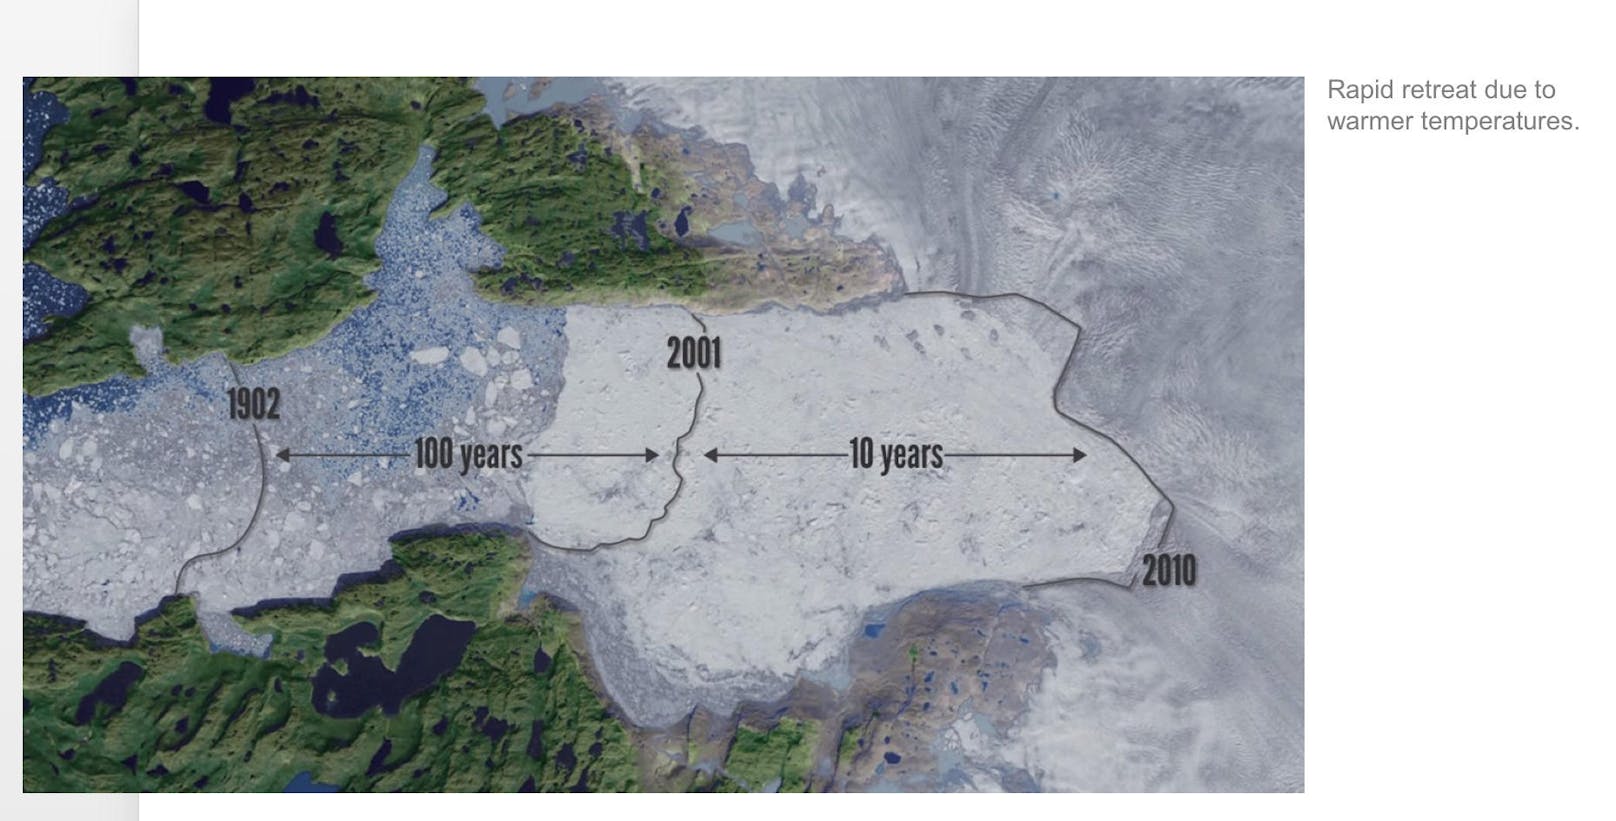 Erschreckend: Die Luftaufnahme zeigt, wie schnell sich der "Jakobshavn Isbræ"-Gletscher in den zehn Jahren zwischen 2001 und 2010 bewegte. Im Gegensatz zu den 100 Jahren von 1902 bis 2001.